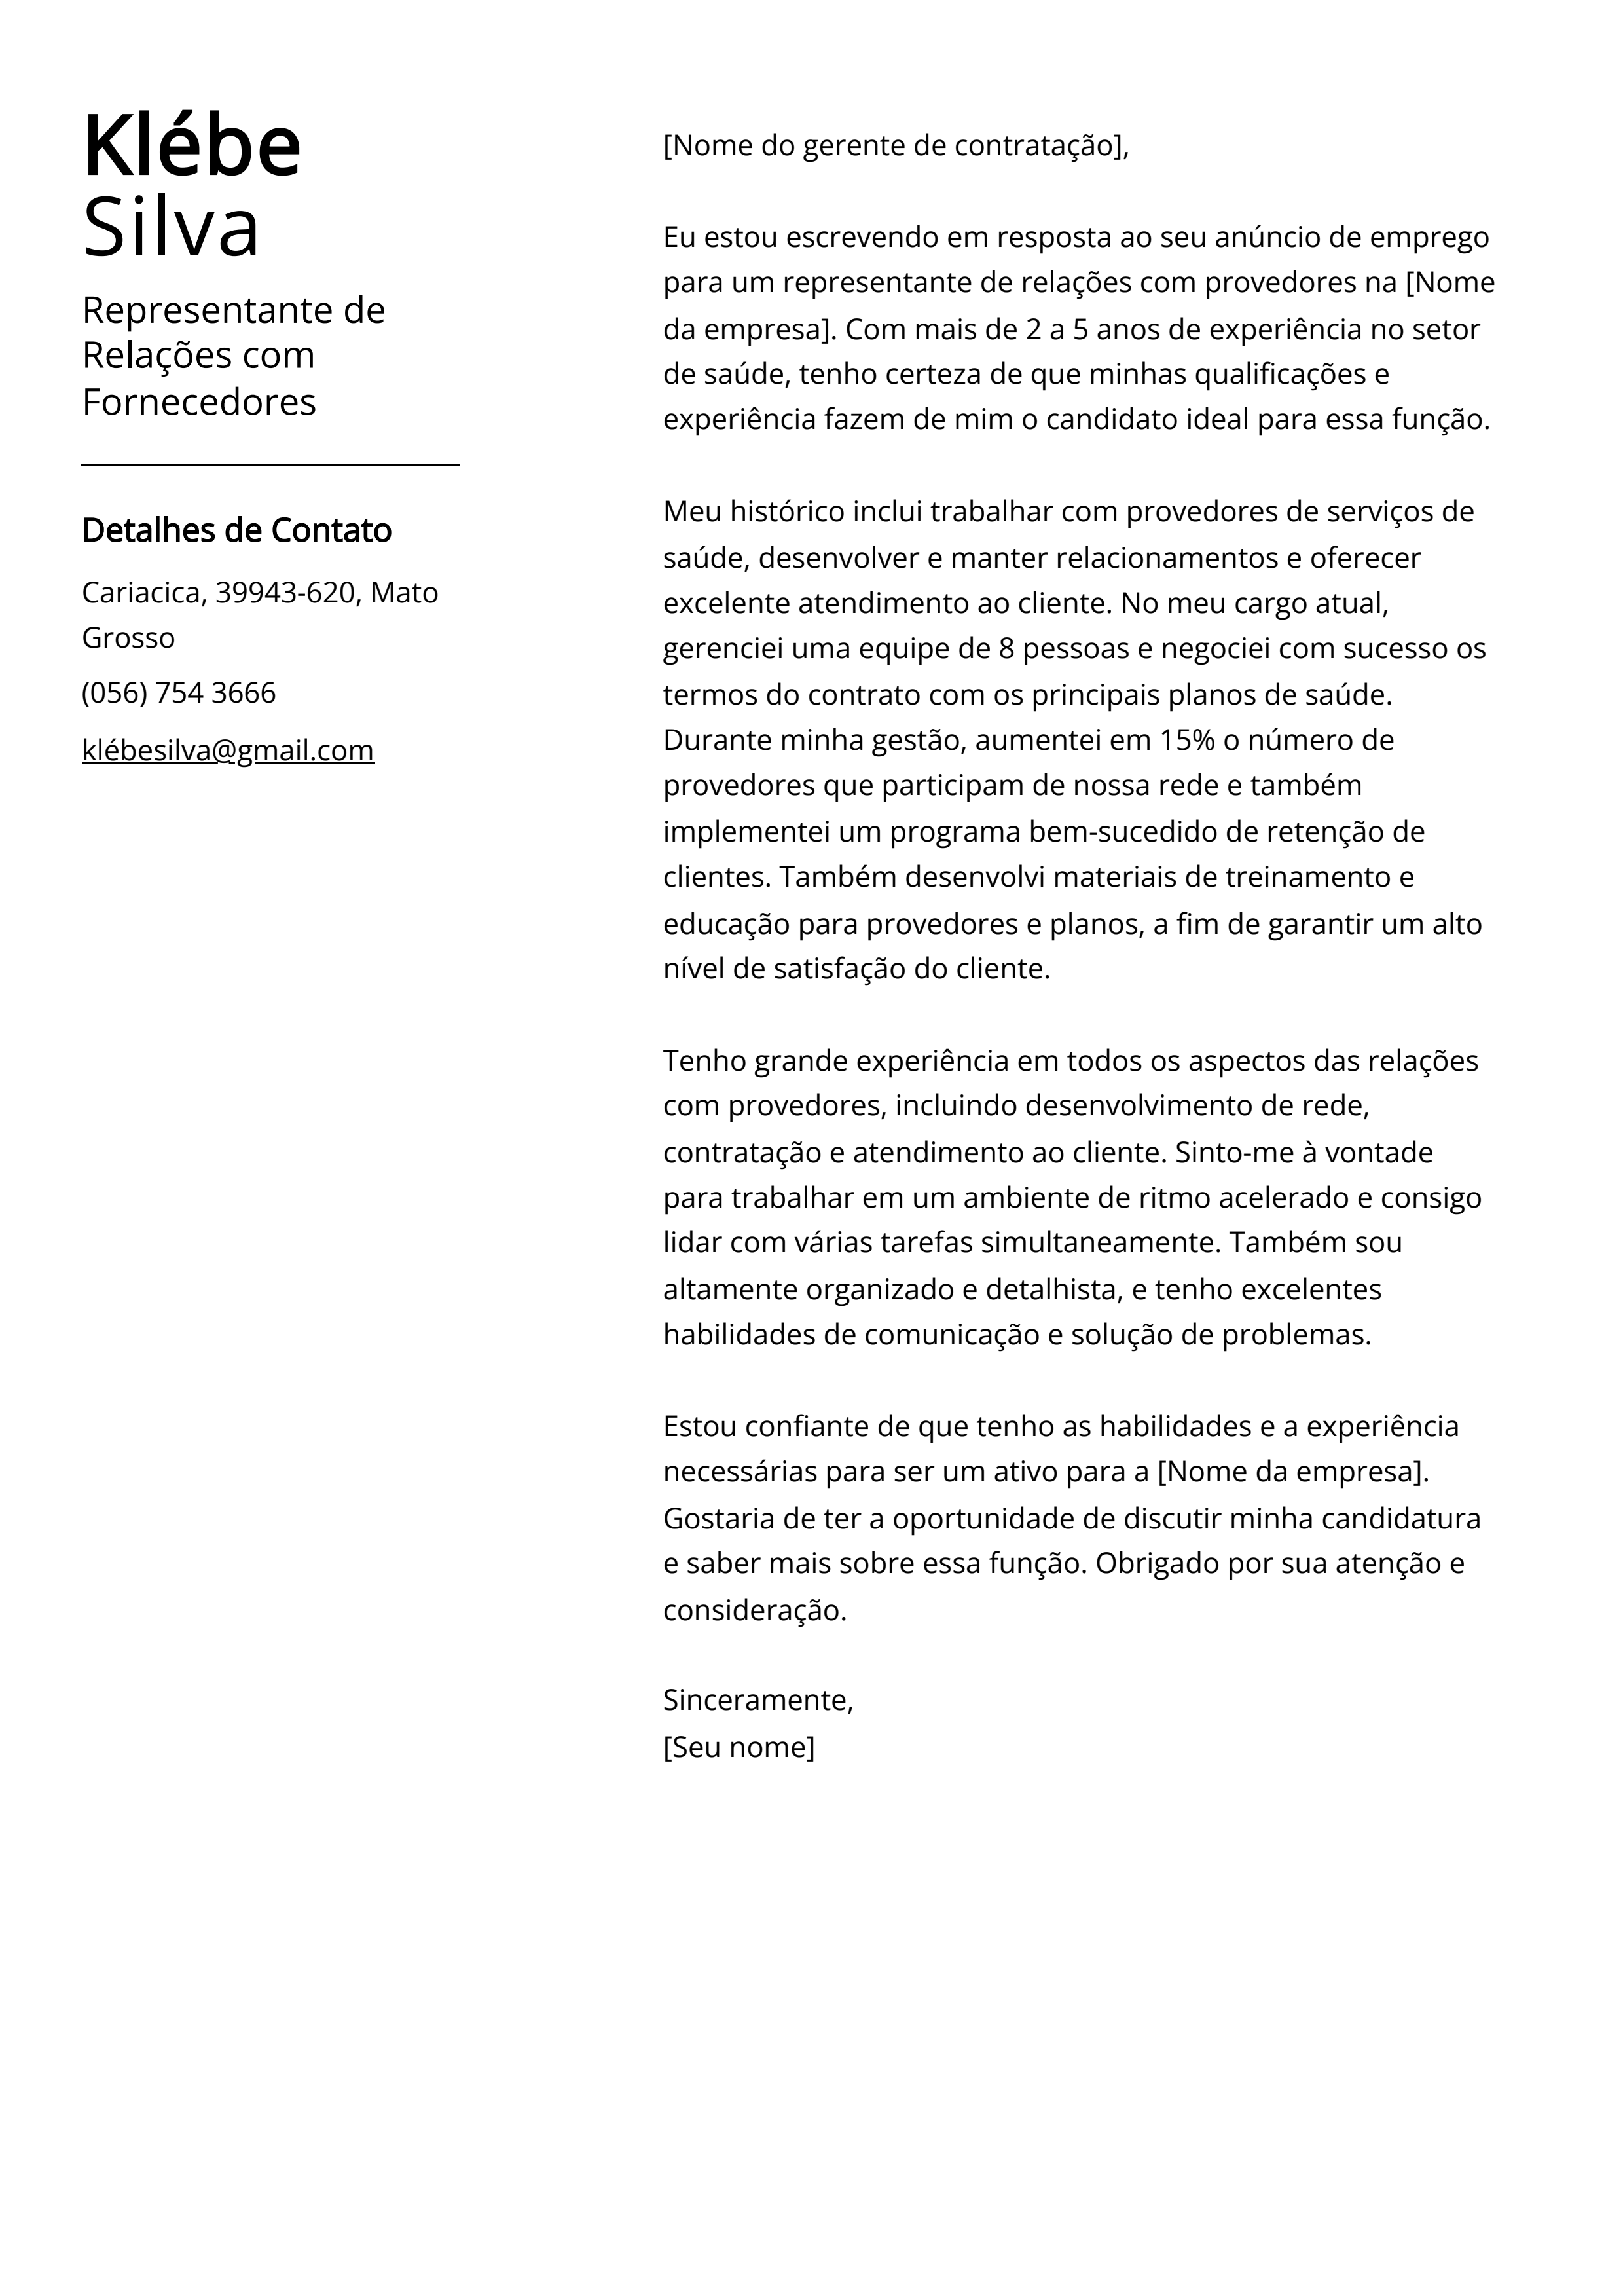 Exemplo de carta de apresentação do Representante de Relações com Fornecedores